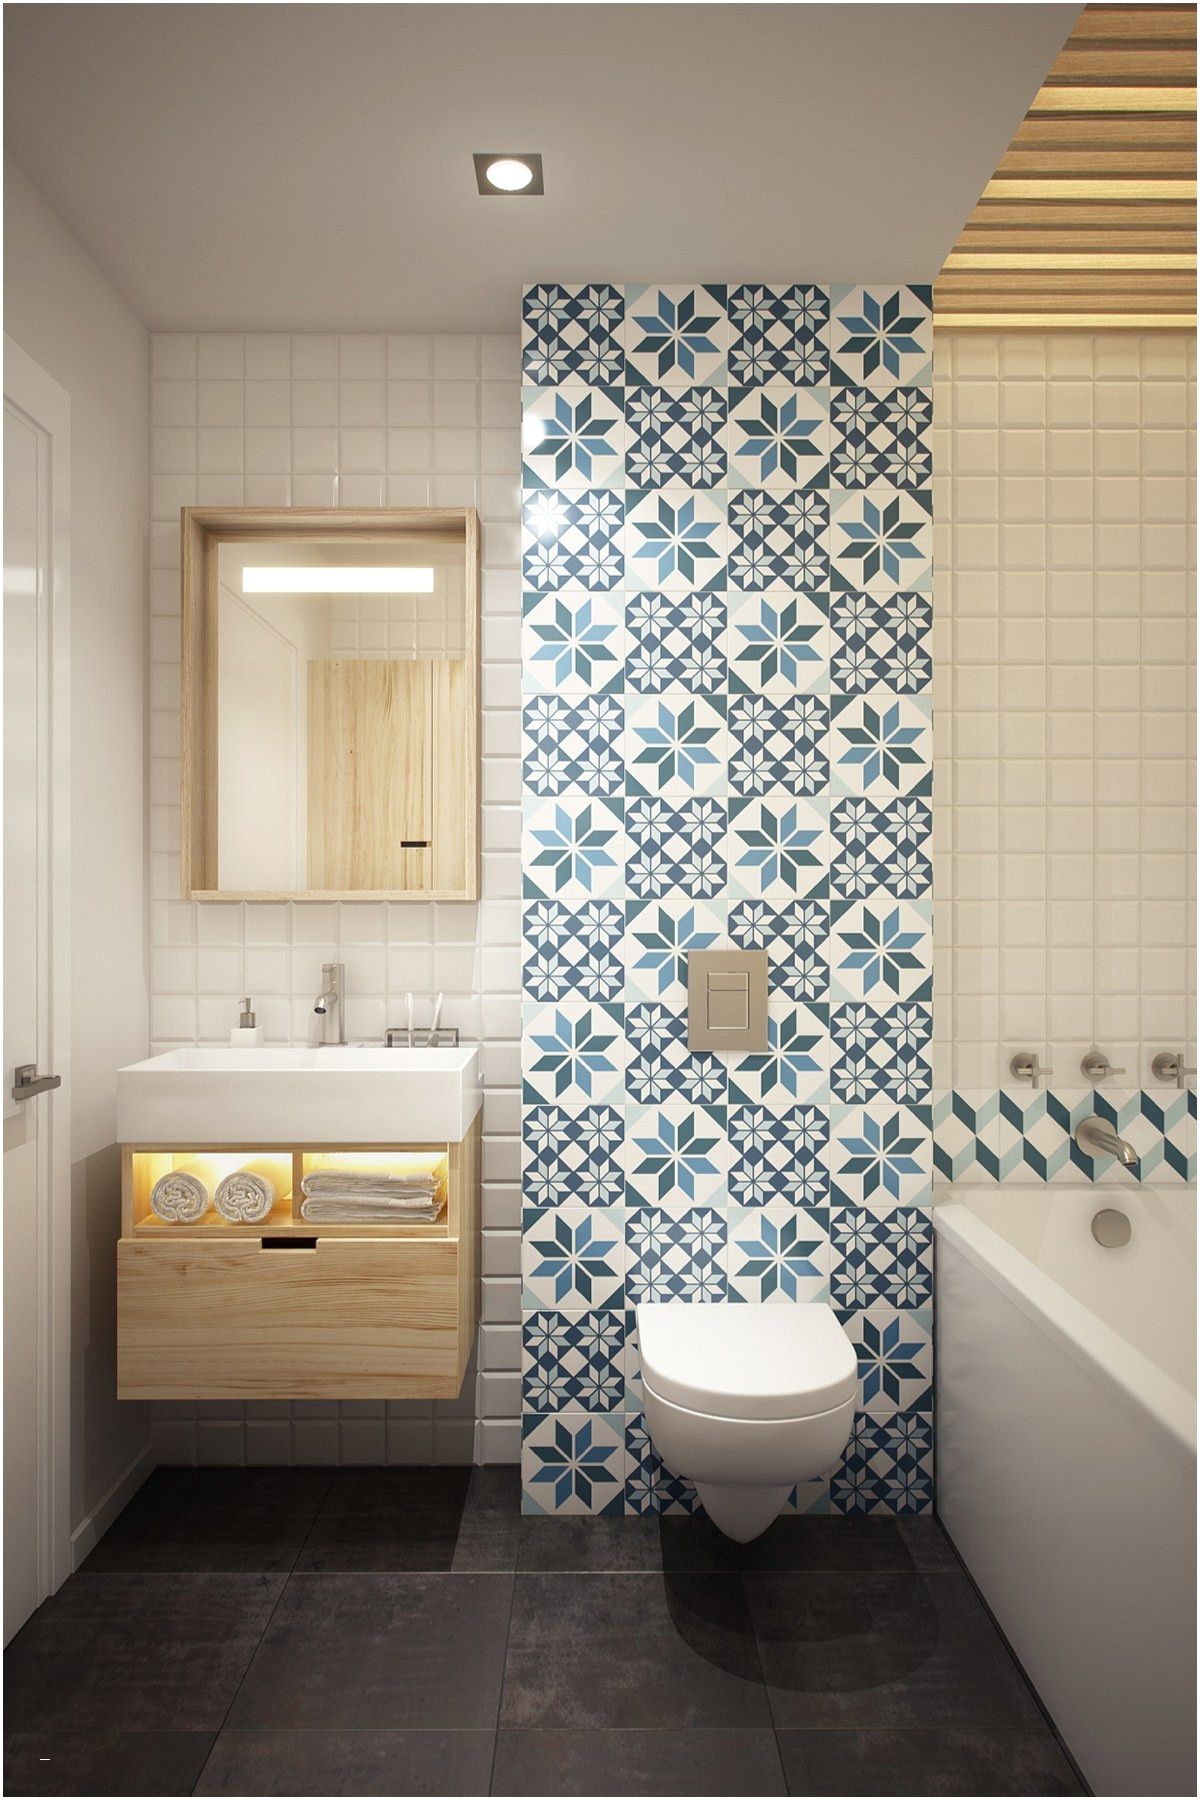 Bathroom Floor Tile Ideas for Small Bathrooms Brilliant Tri Tiles for Small Bathroom Floor